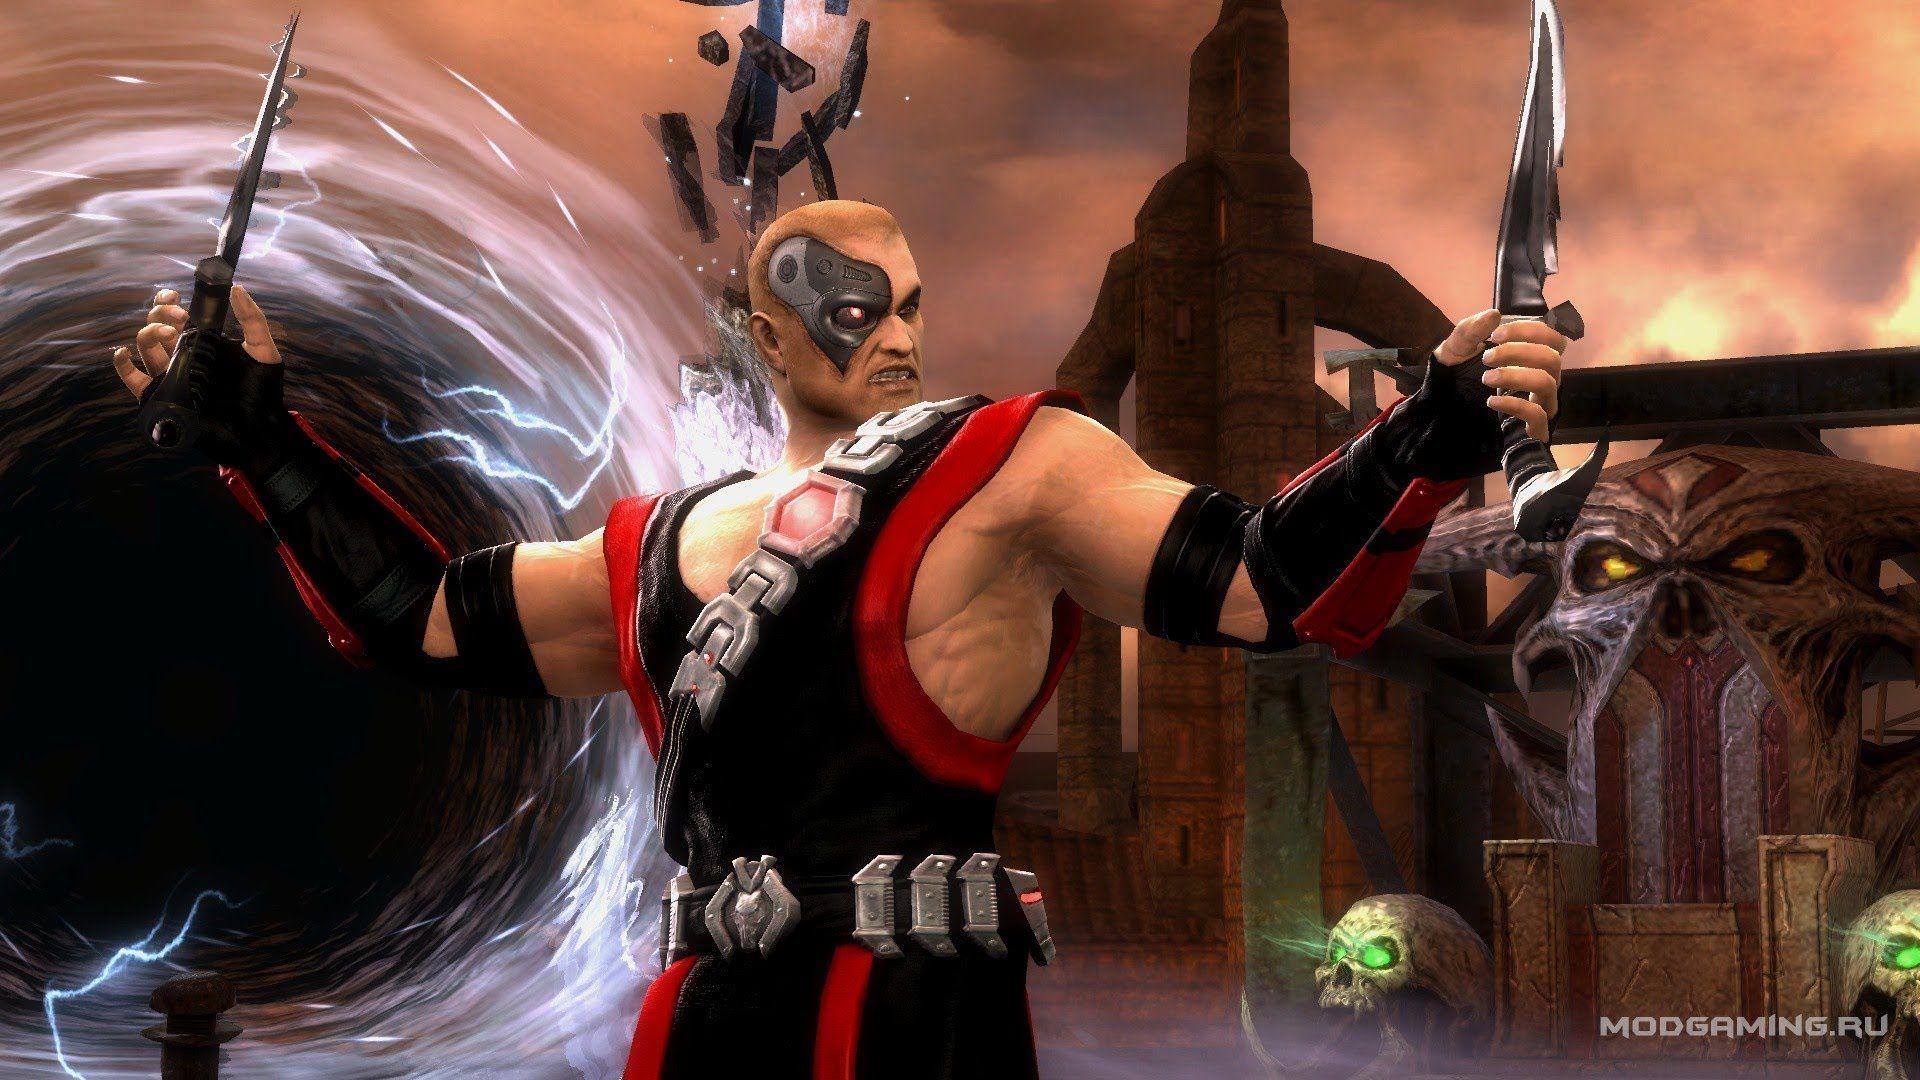 Kano MK 3 Skin in Mortal Kombat 9